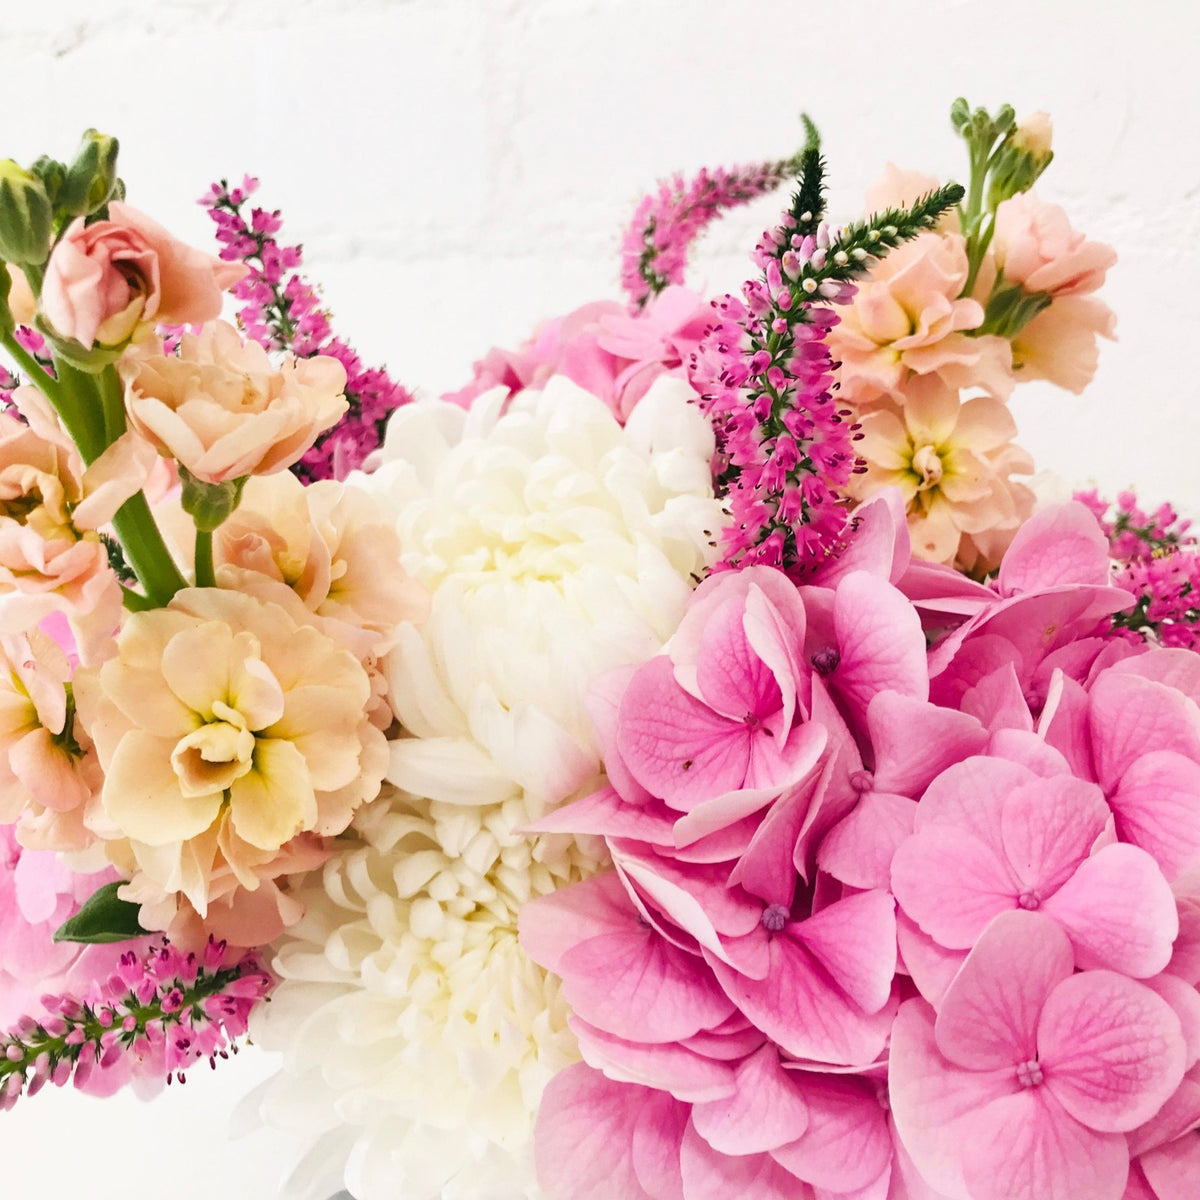 Mother's Gentleness Bouquet - Amazing Graze Flowers